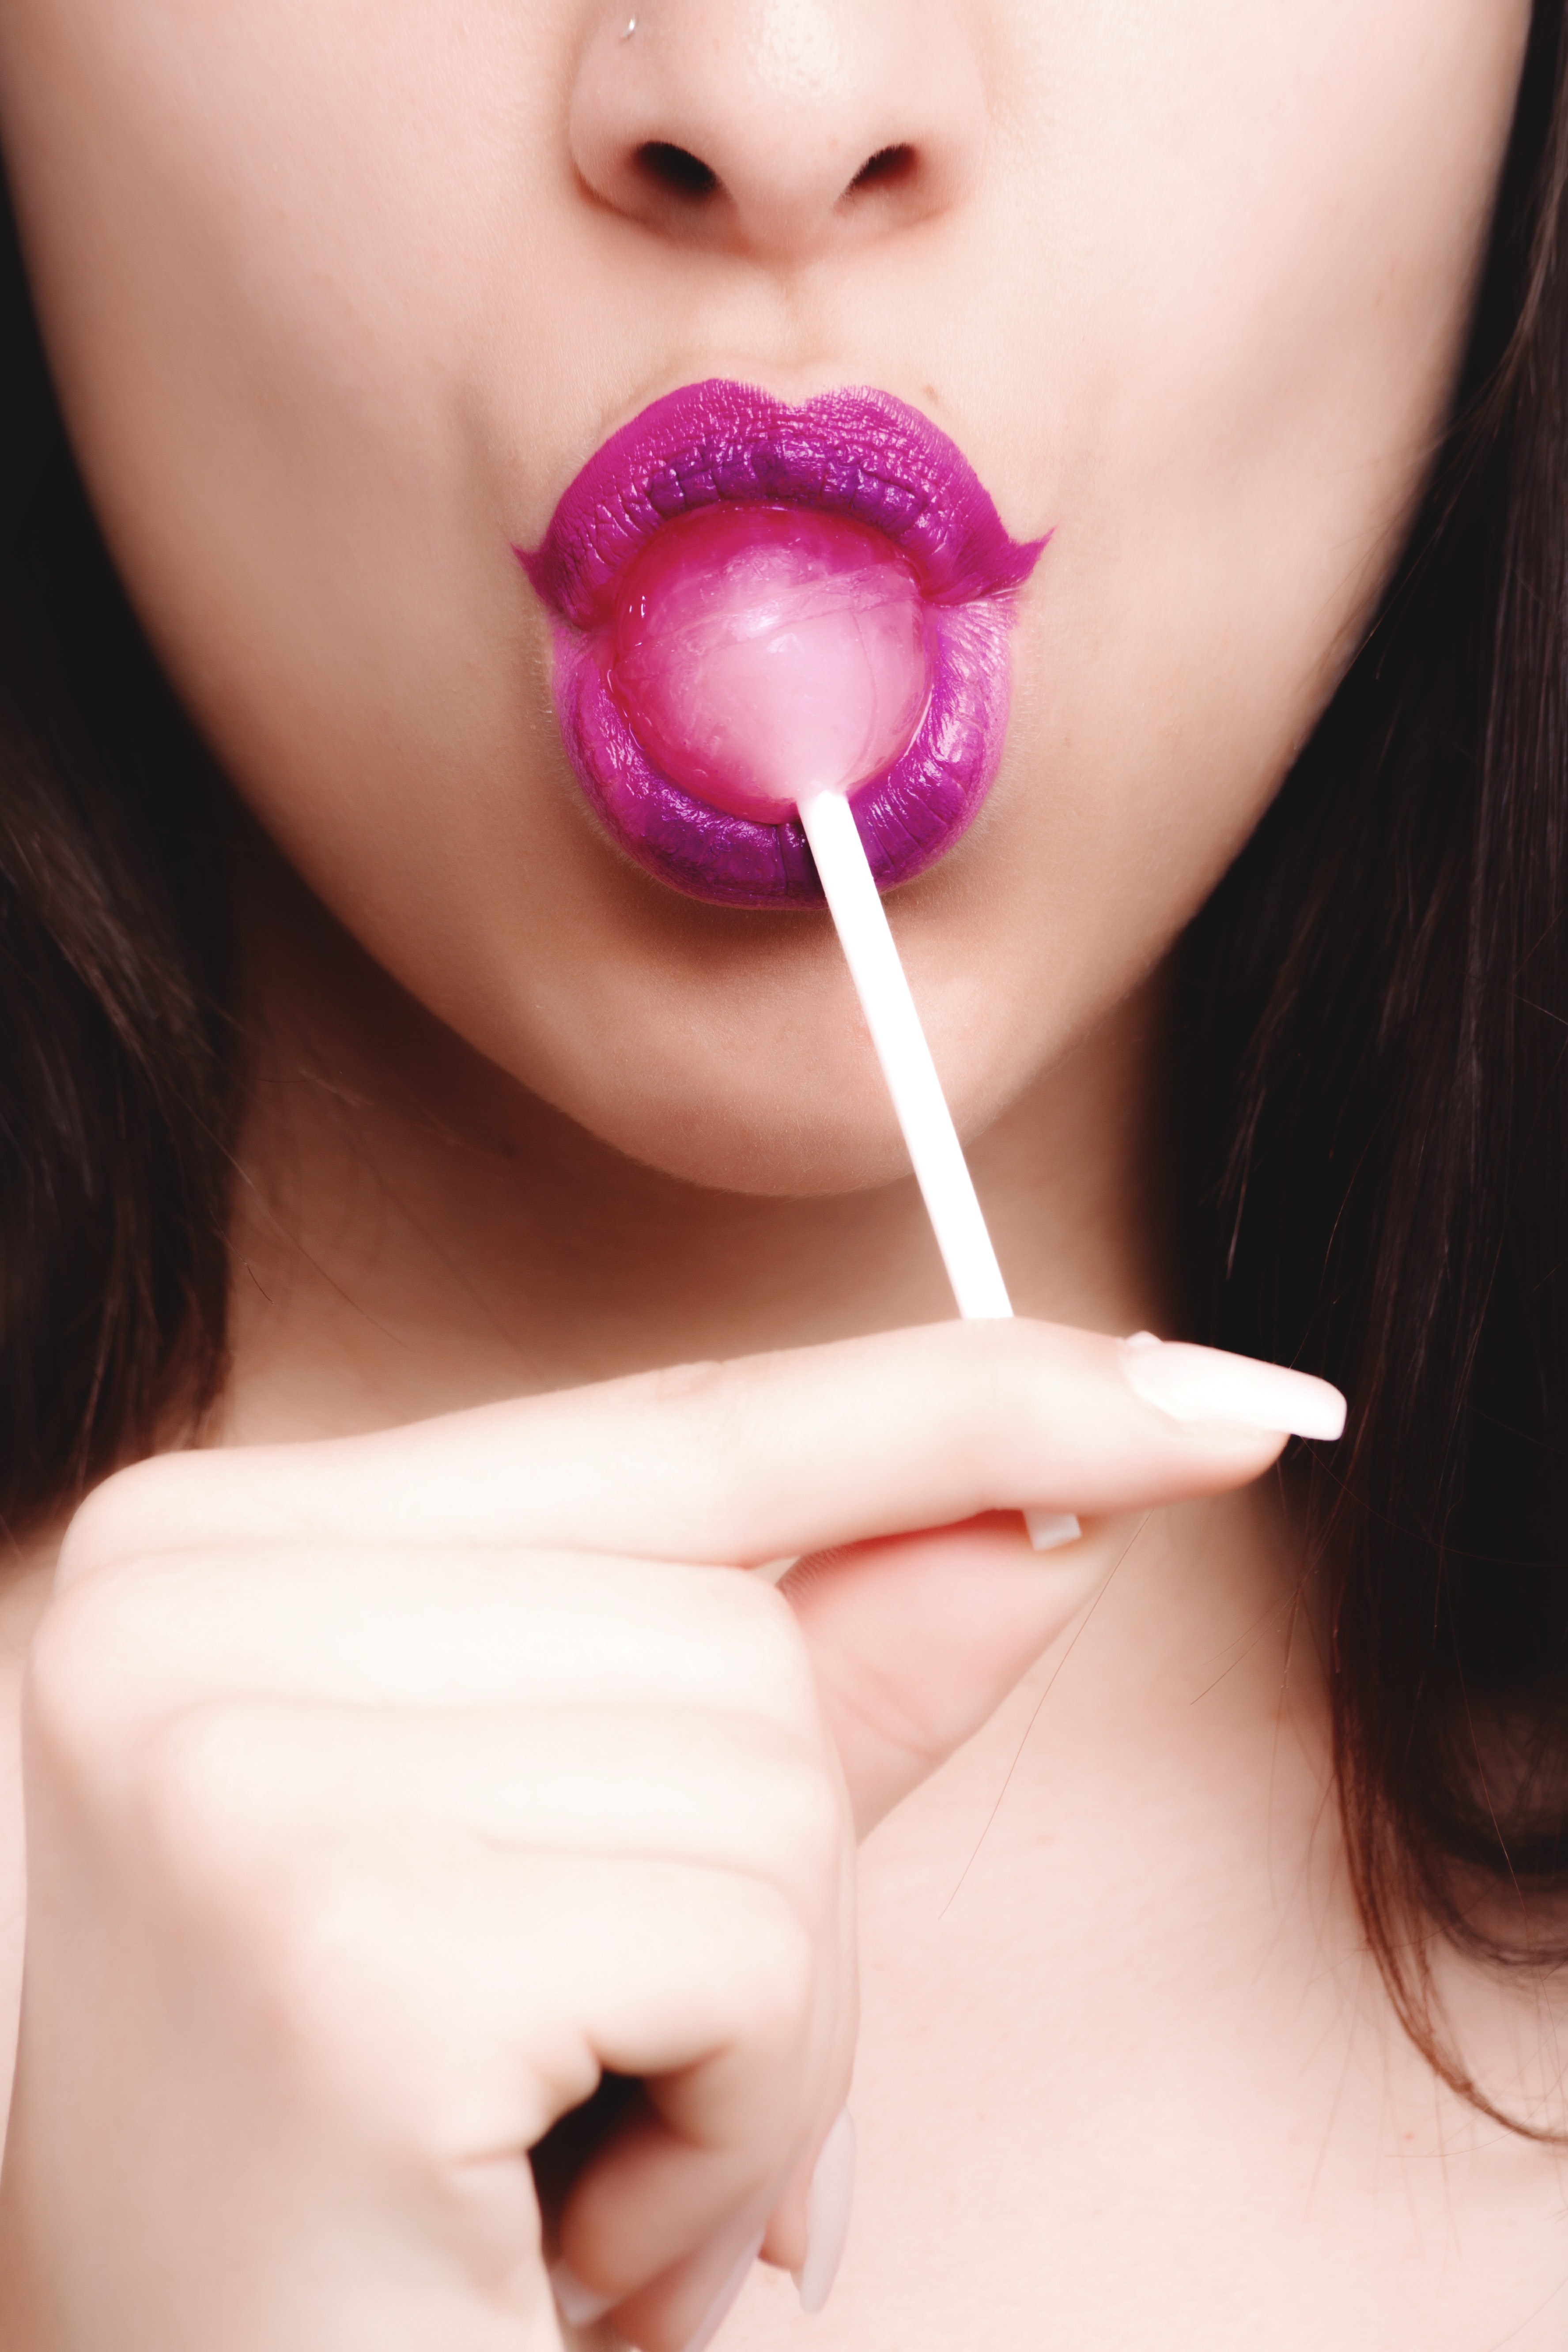 Girl Licking A Lollipop 3551x5327 Wallpaper